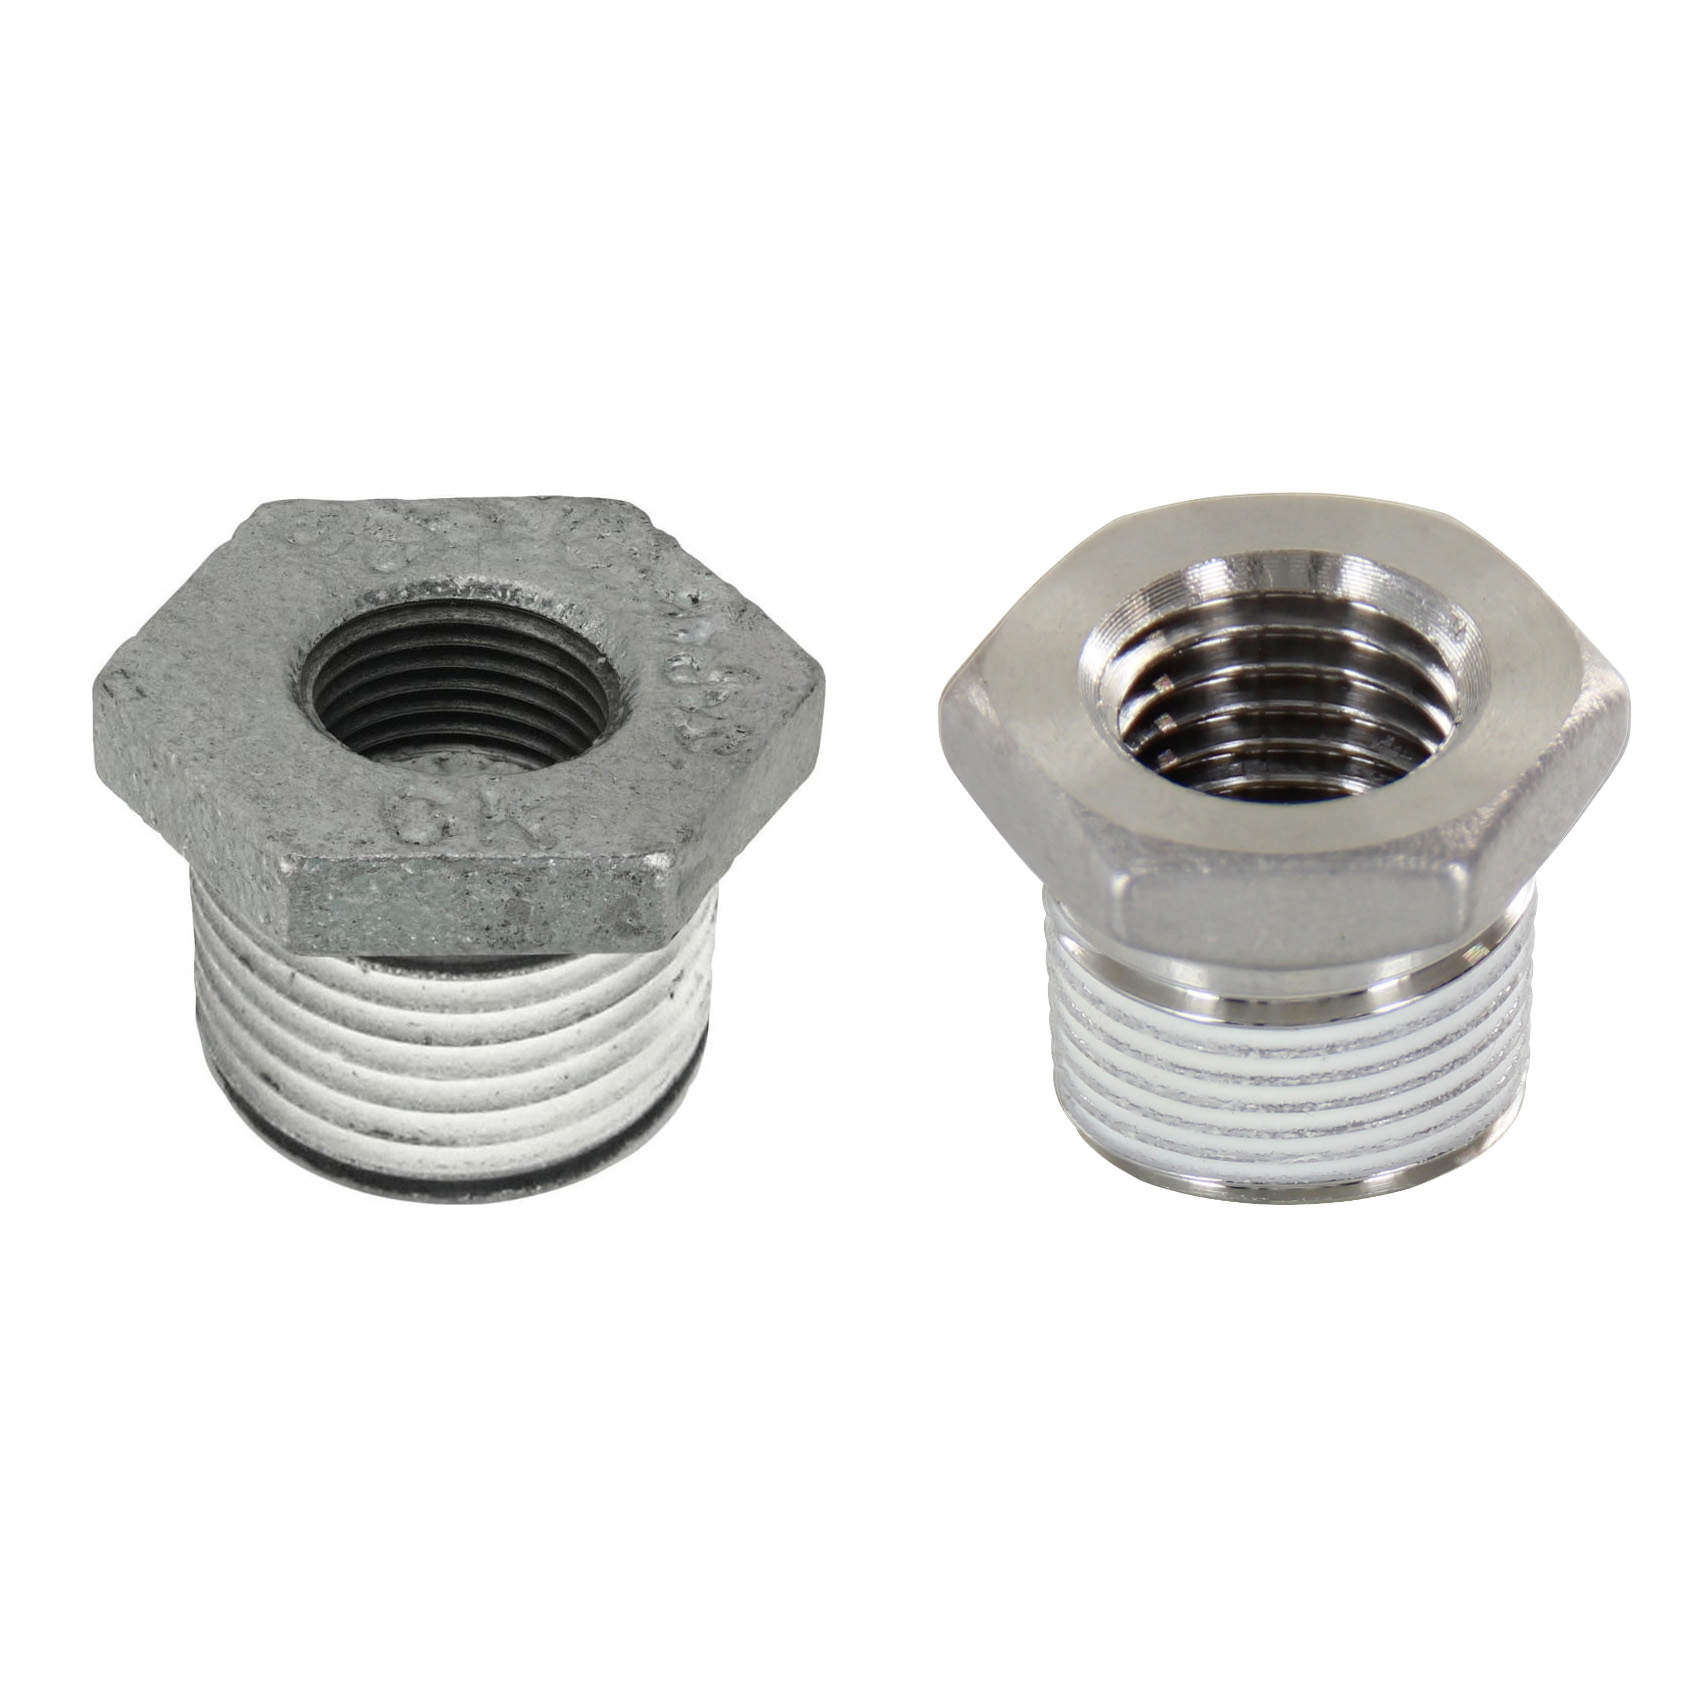 Low Pressure Screw Fittings - Thread Coated Type - Steel Pipe Fittings - Bushings SUCPB34